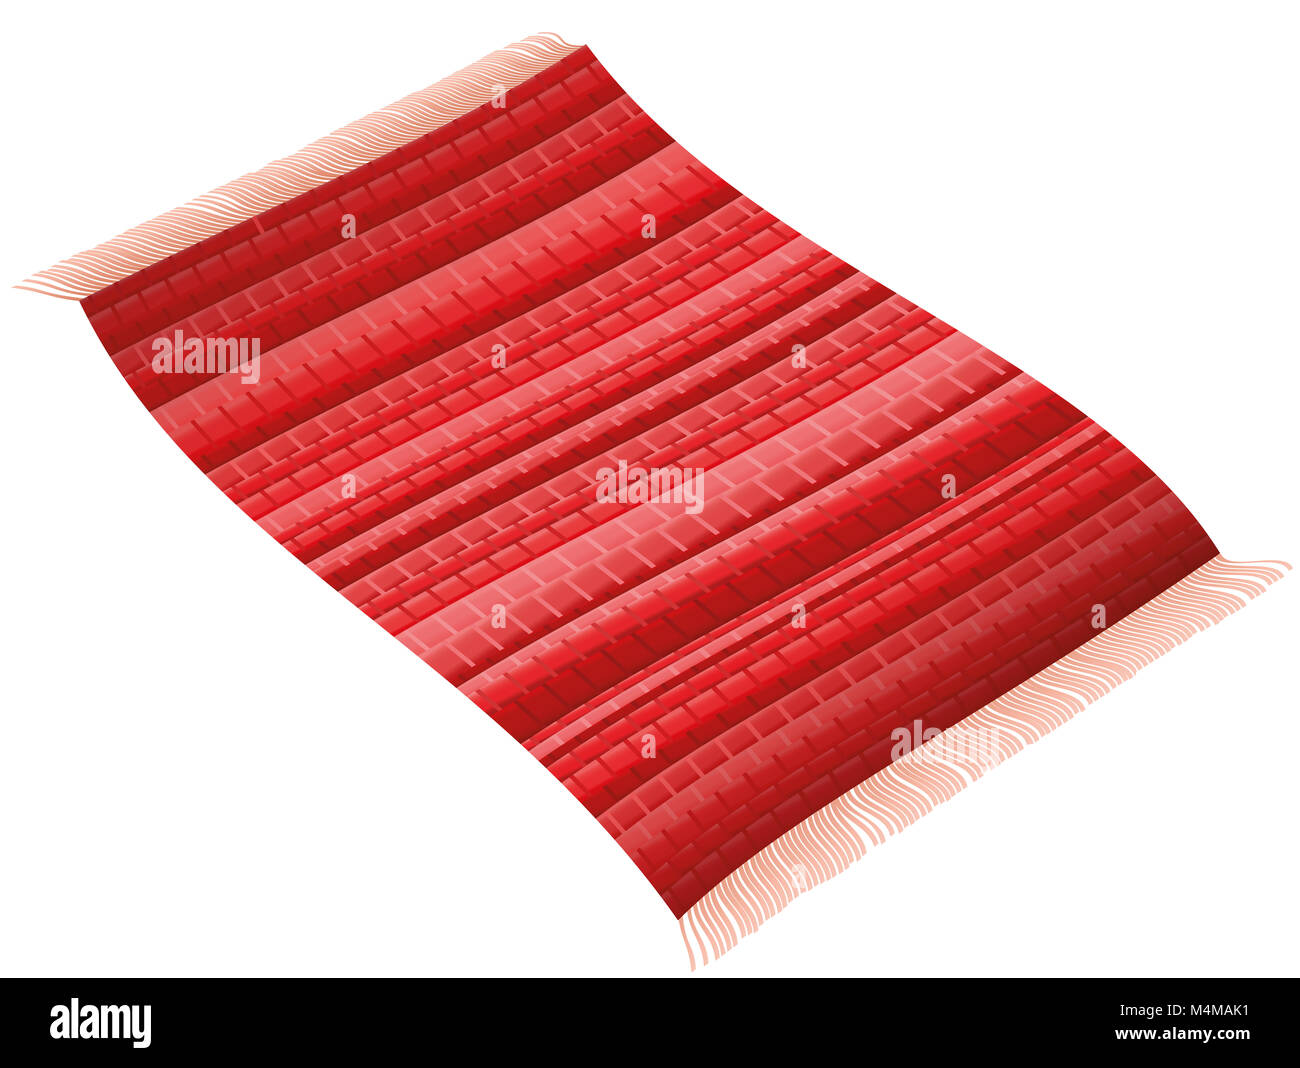 Roten Teppich. Flying rag rug wie ein magischer Teppich. Abbildung: auf weißem Hintergrund. Stockfoto